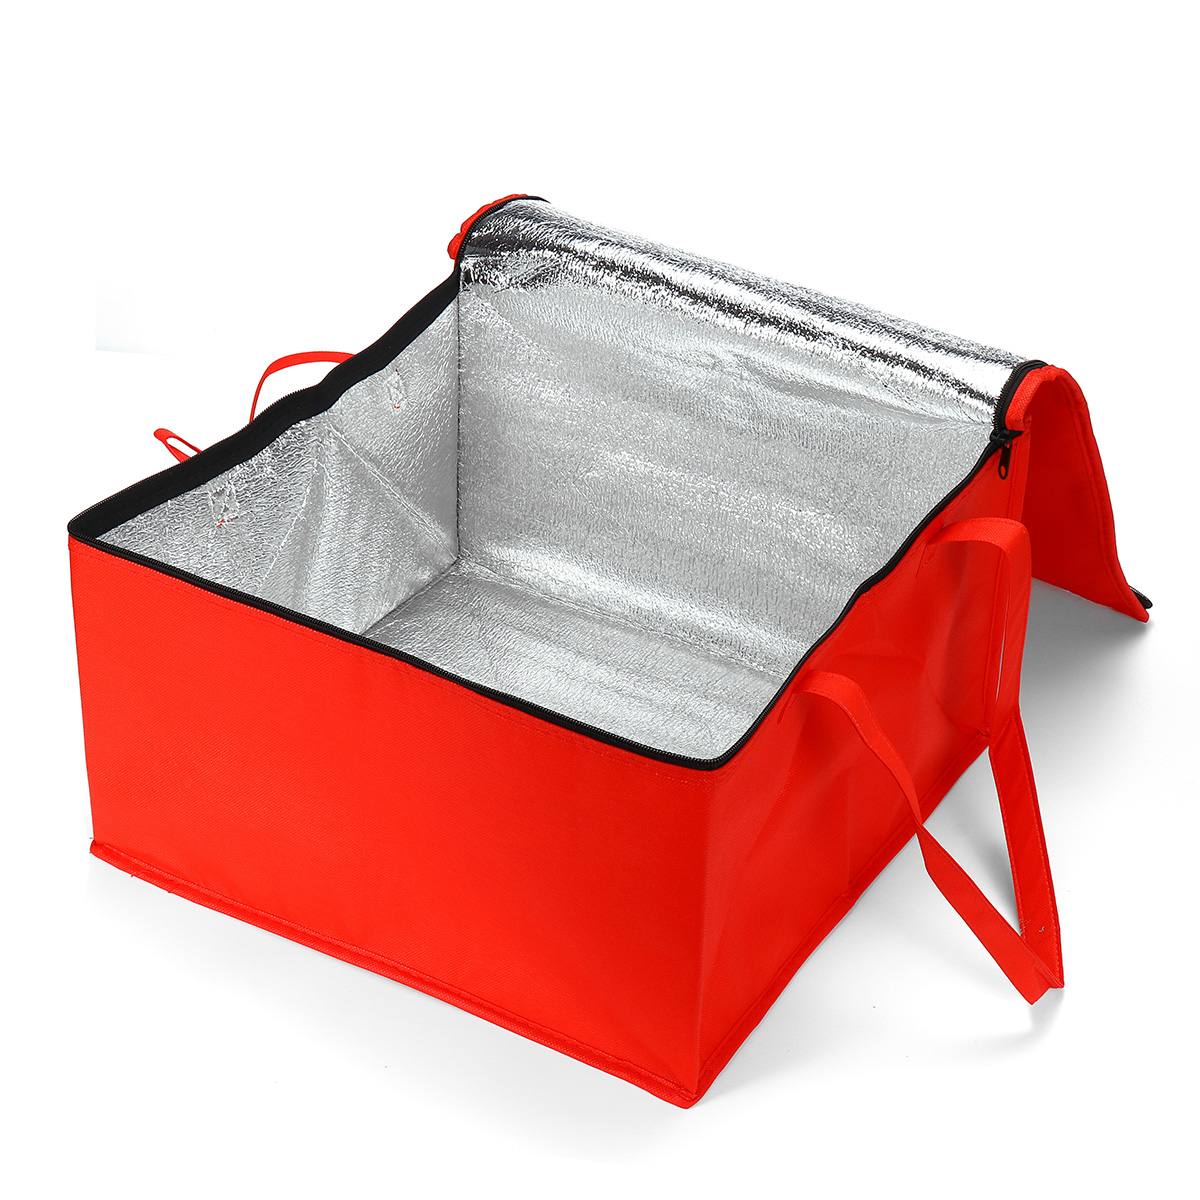 10/12 tommer frokost køletaske isolering folde picnic bærbar ispose mad termisk taske madpose drikkebærer pizza: Rød / 12 tommer